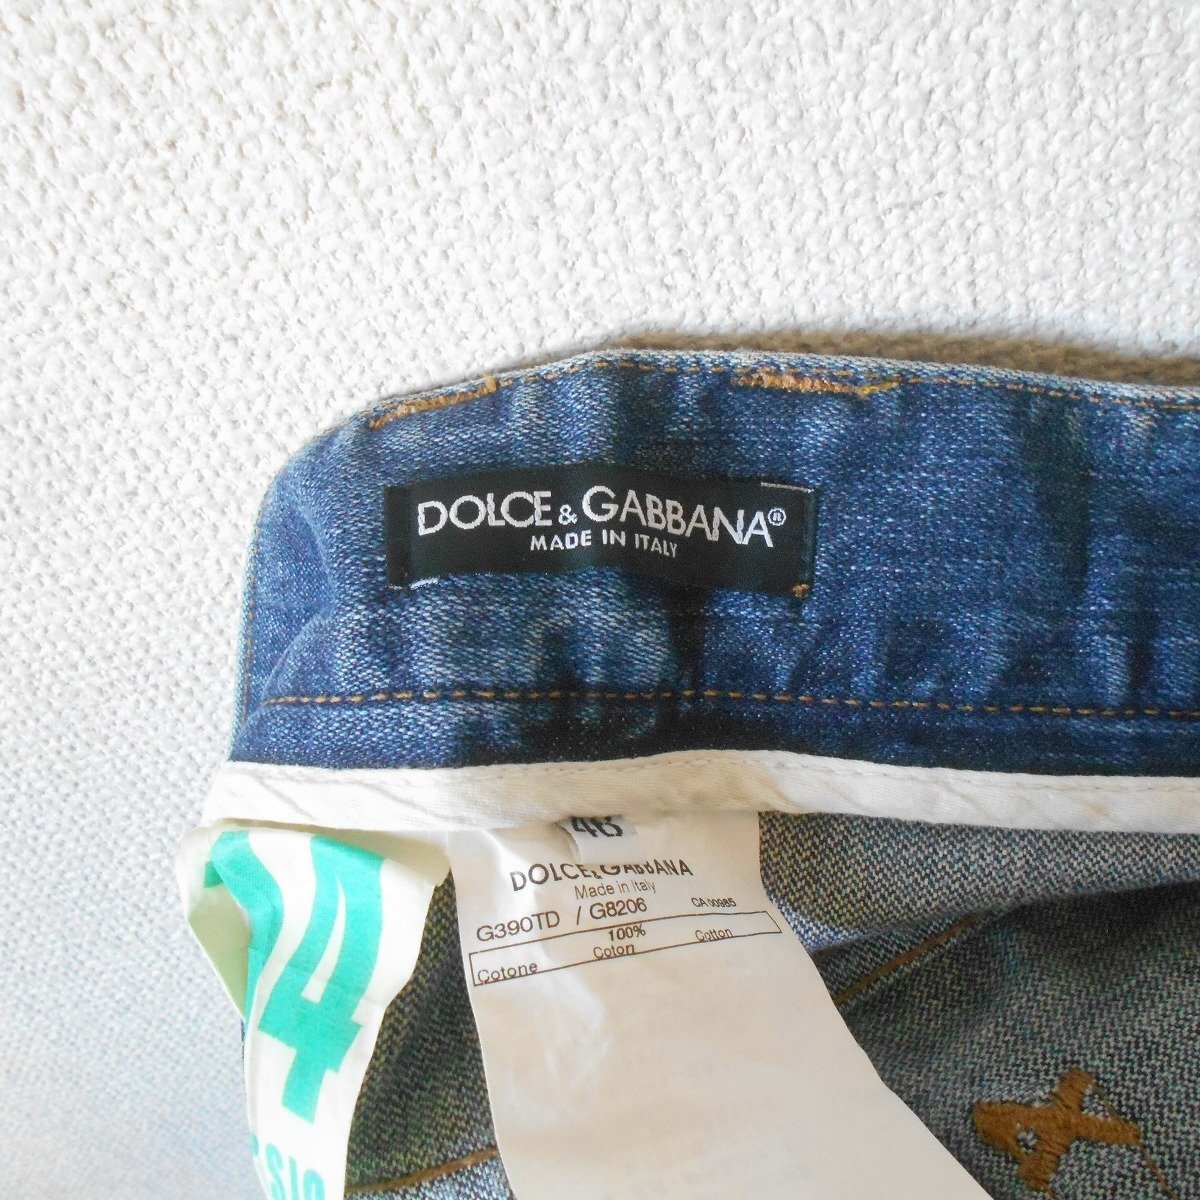  Dolce & Gabbana DOLCE&GABBANA Denim джинсы 46 повреждение ввод женский 